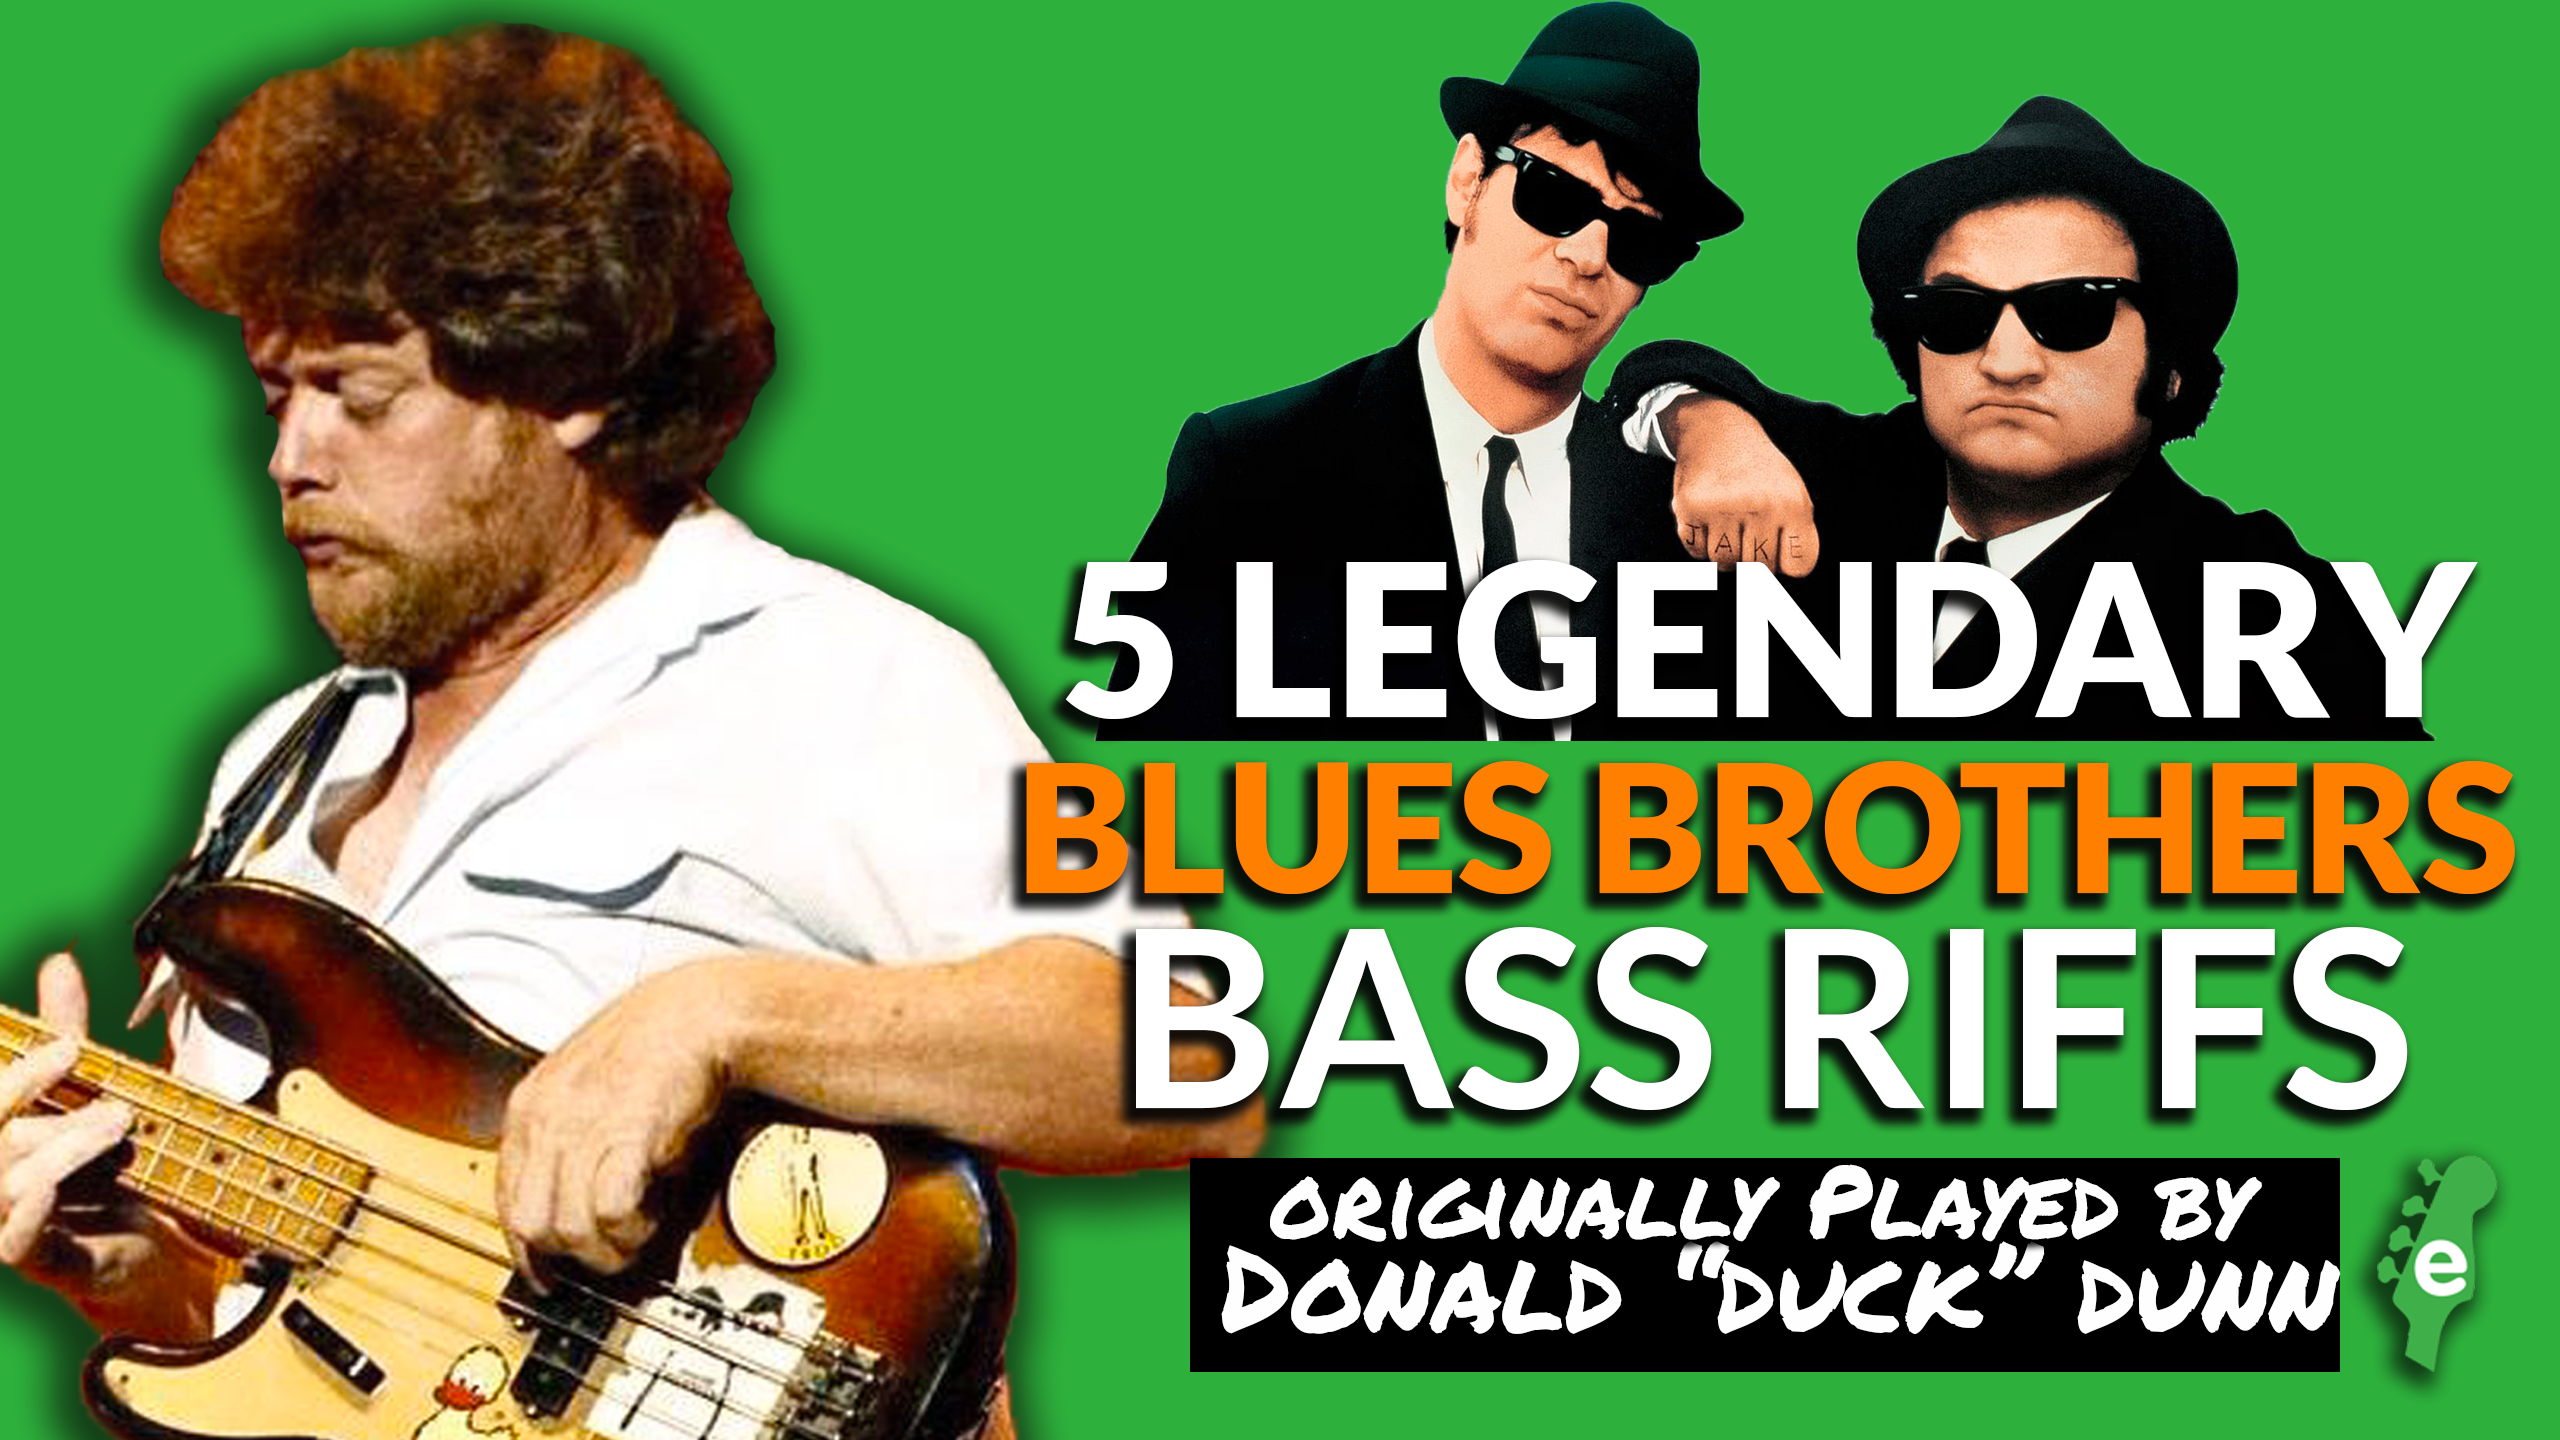 Bass brothers. Donald “Duck” Dunn братья блюз. Donald "Duck" Dunn Bass 1969. Brother bass